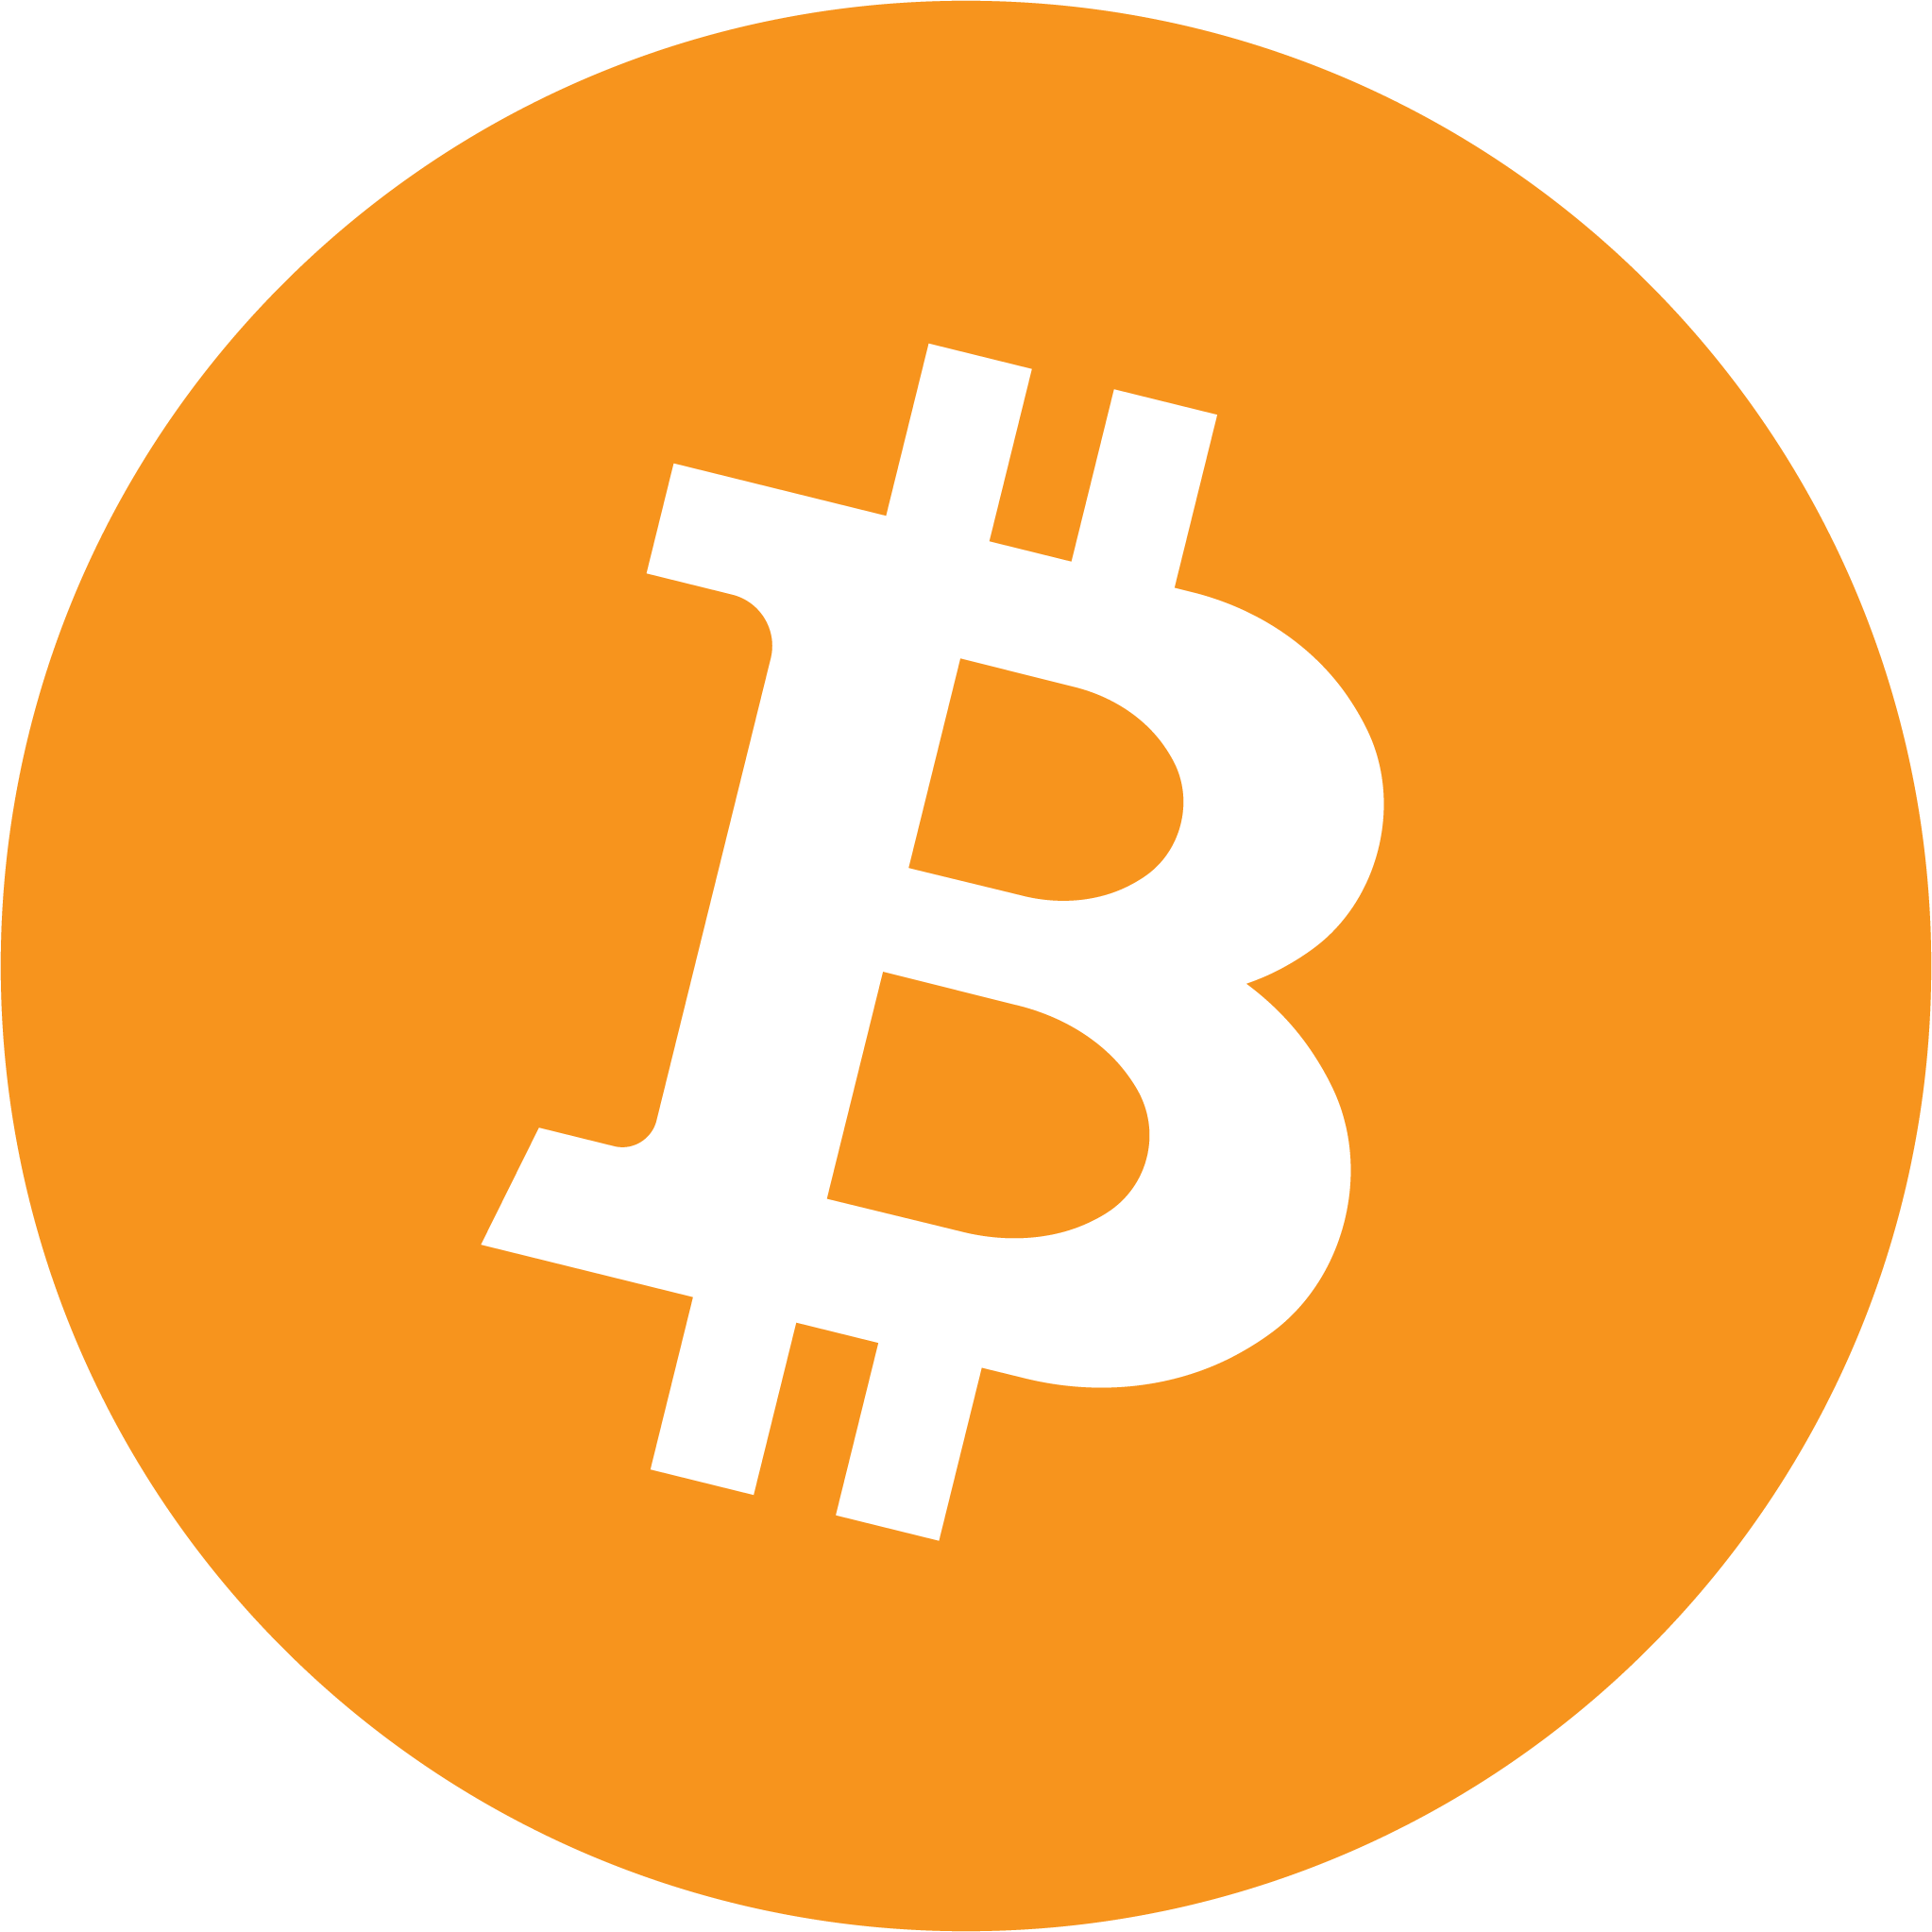 Symbol Logo - Bitcoin Symbol and Logo Origins